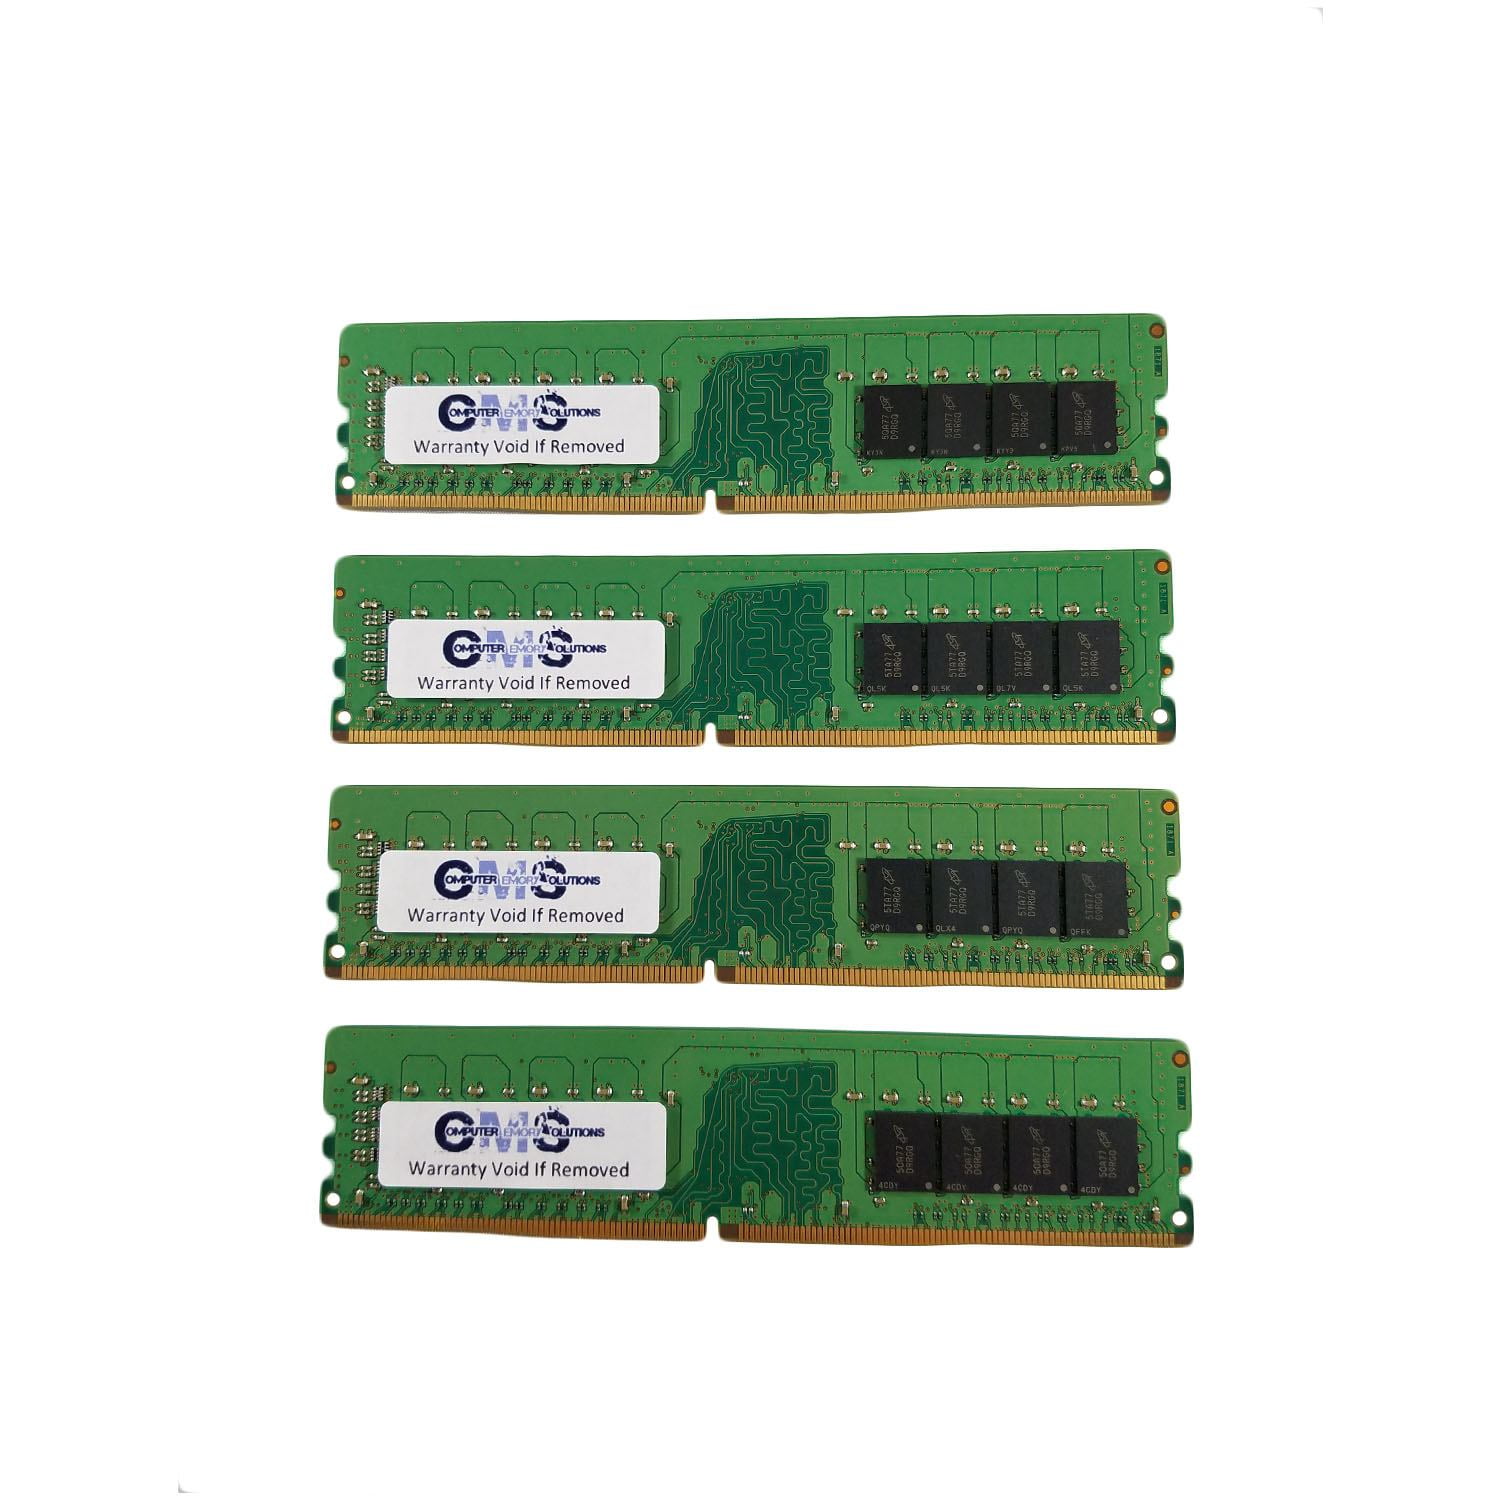 Procent dødbringende tuberkulose CMS 64GB (4X16GB) DDR4 19200 2400MHZ NON ECC DIMM Memory Ram Upgrade  Compatible with Asus/Asmobile® Z170 PRO Gaming, Z170-A, Z170-AR, Z170-DELUXE,  Z170-E, Z170-K Motherboards - C120 - Walmart.com